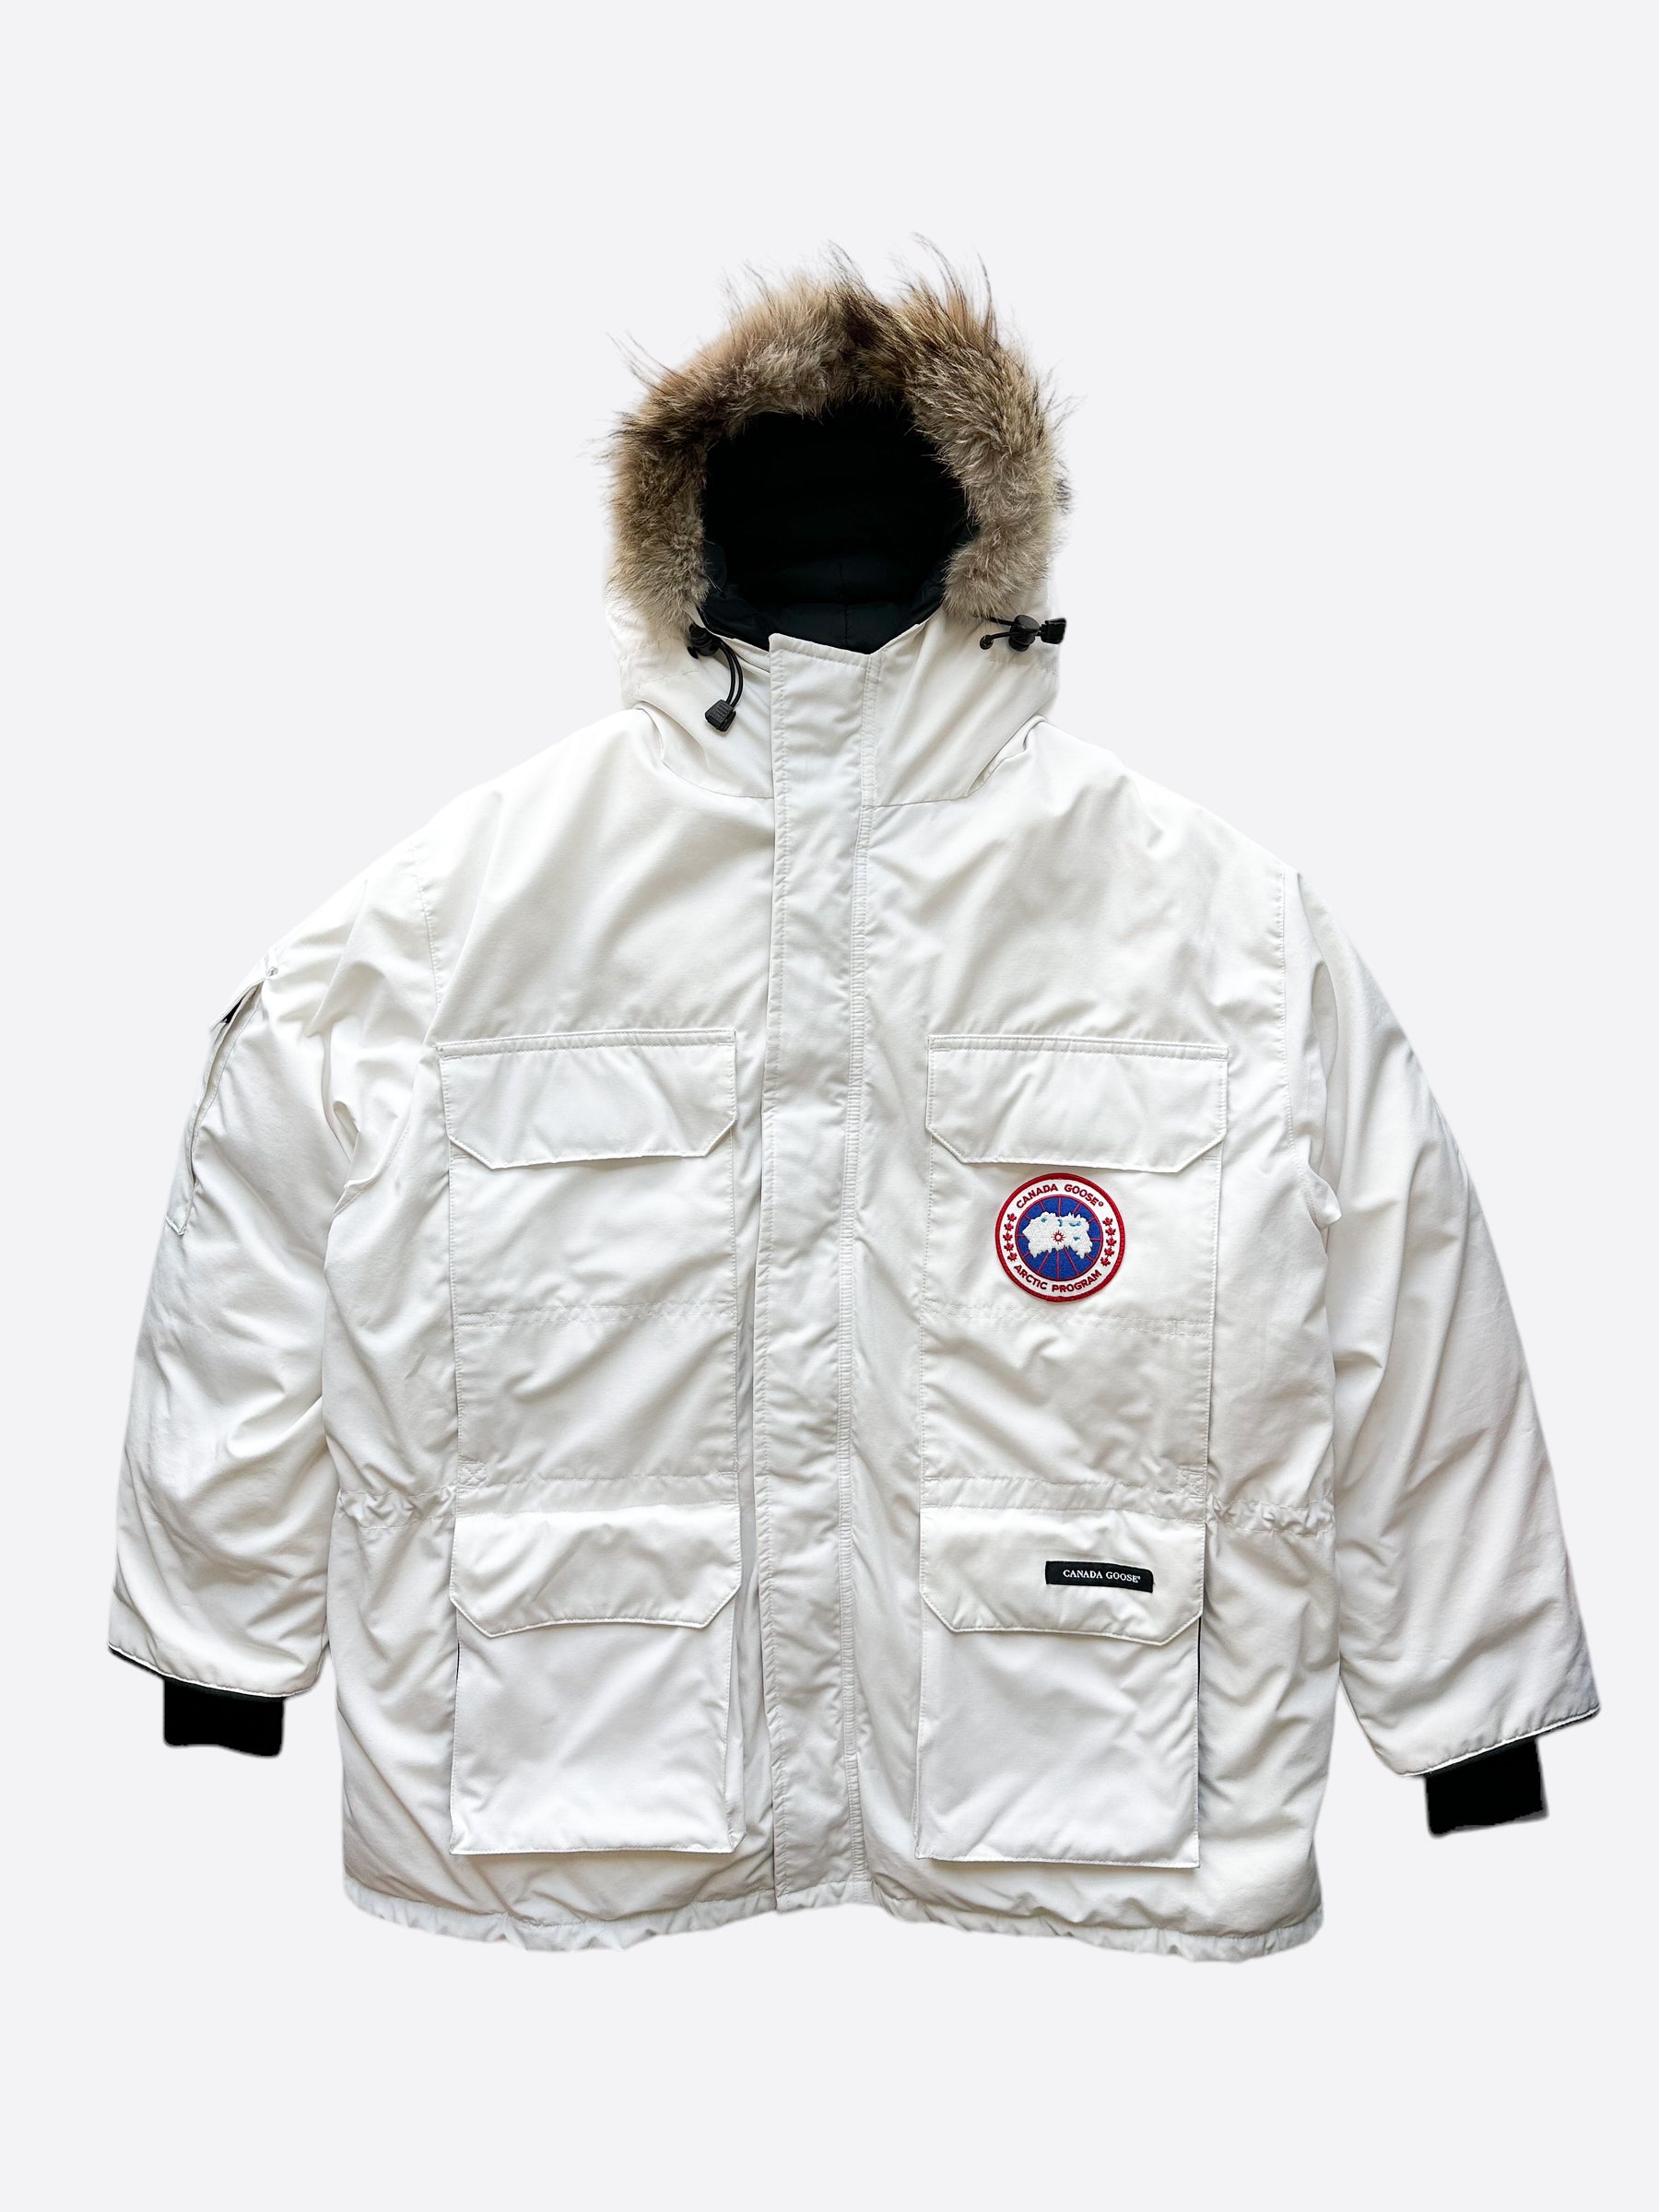 Canada Goose Men's Jackets, Coats & Accessories